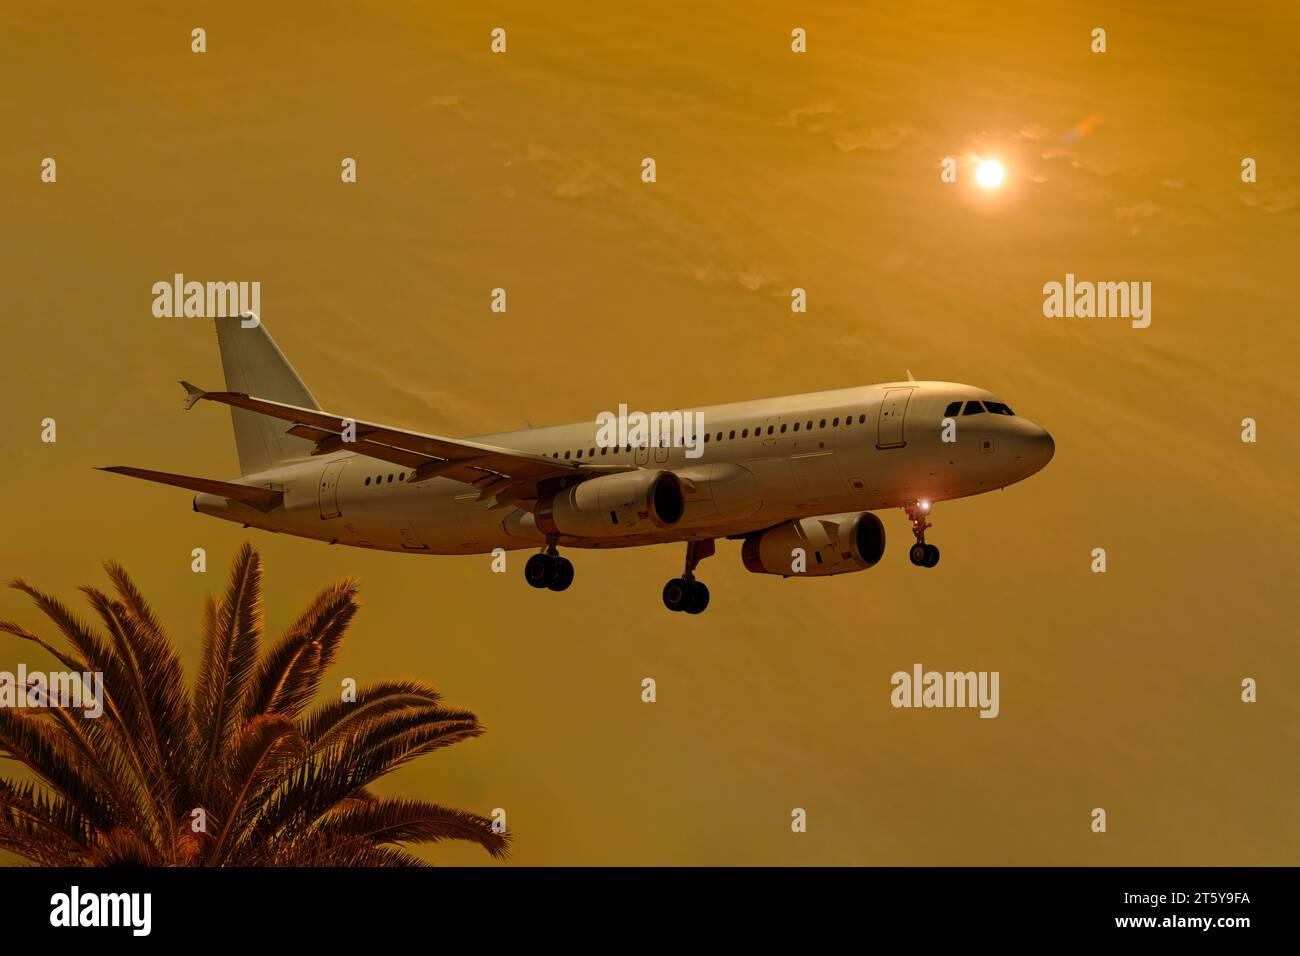 Avion atterrissant vers le coucher du soleil. Livraison gratuite Airbus A320-200. Banque D'Images